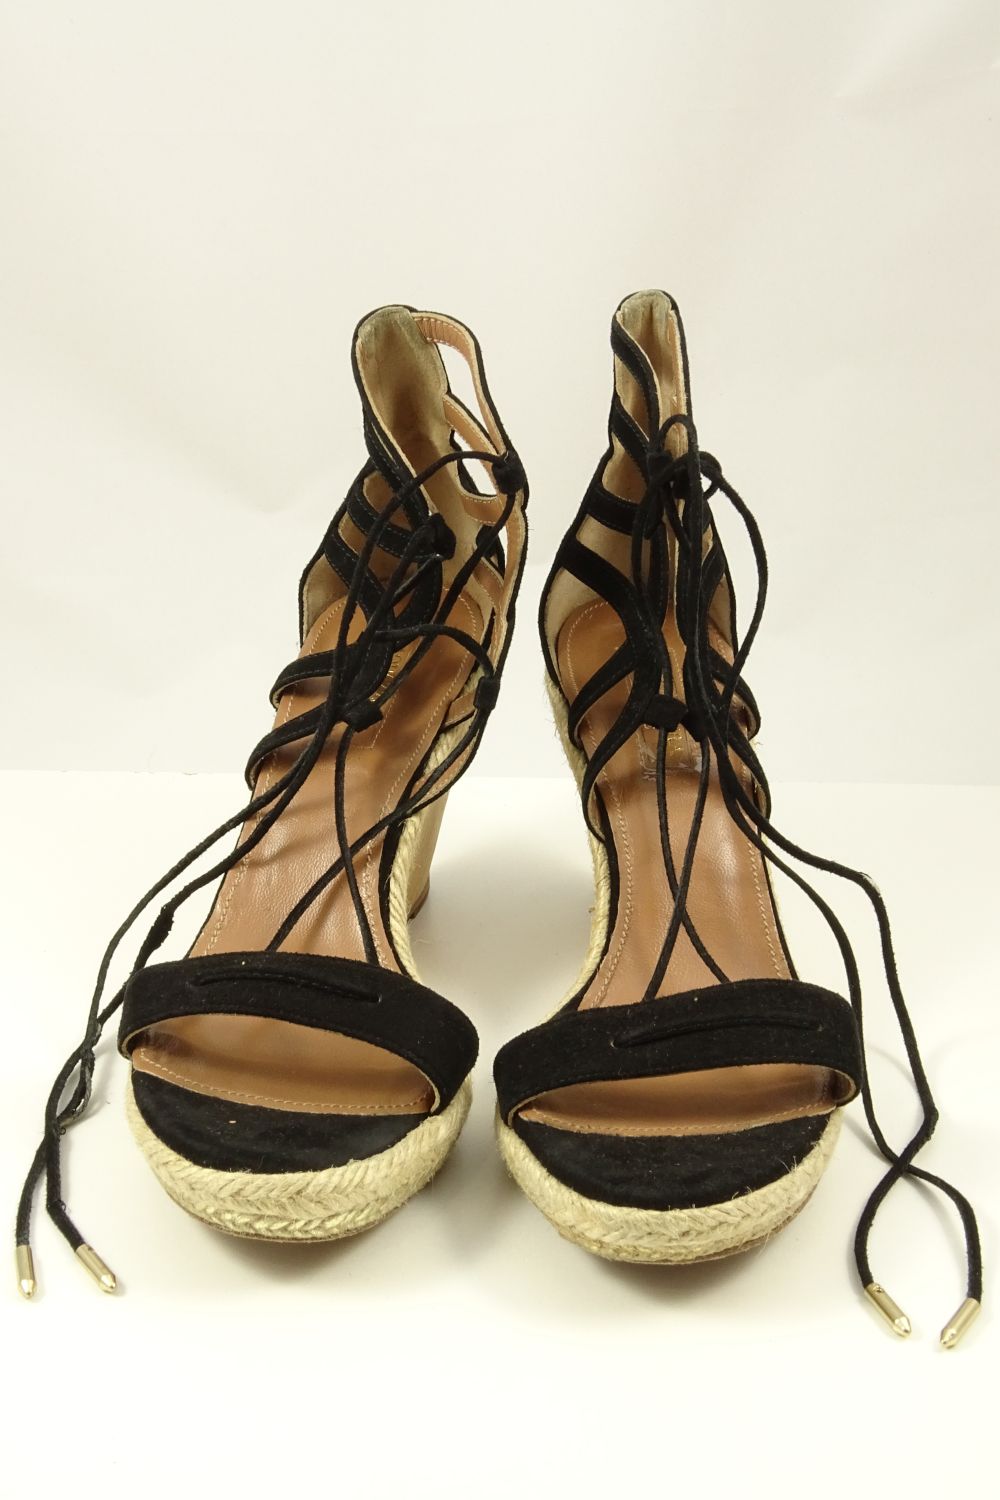 Aquazzura Sandals 37.5